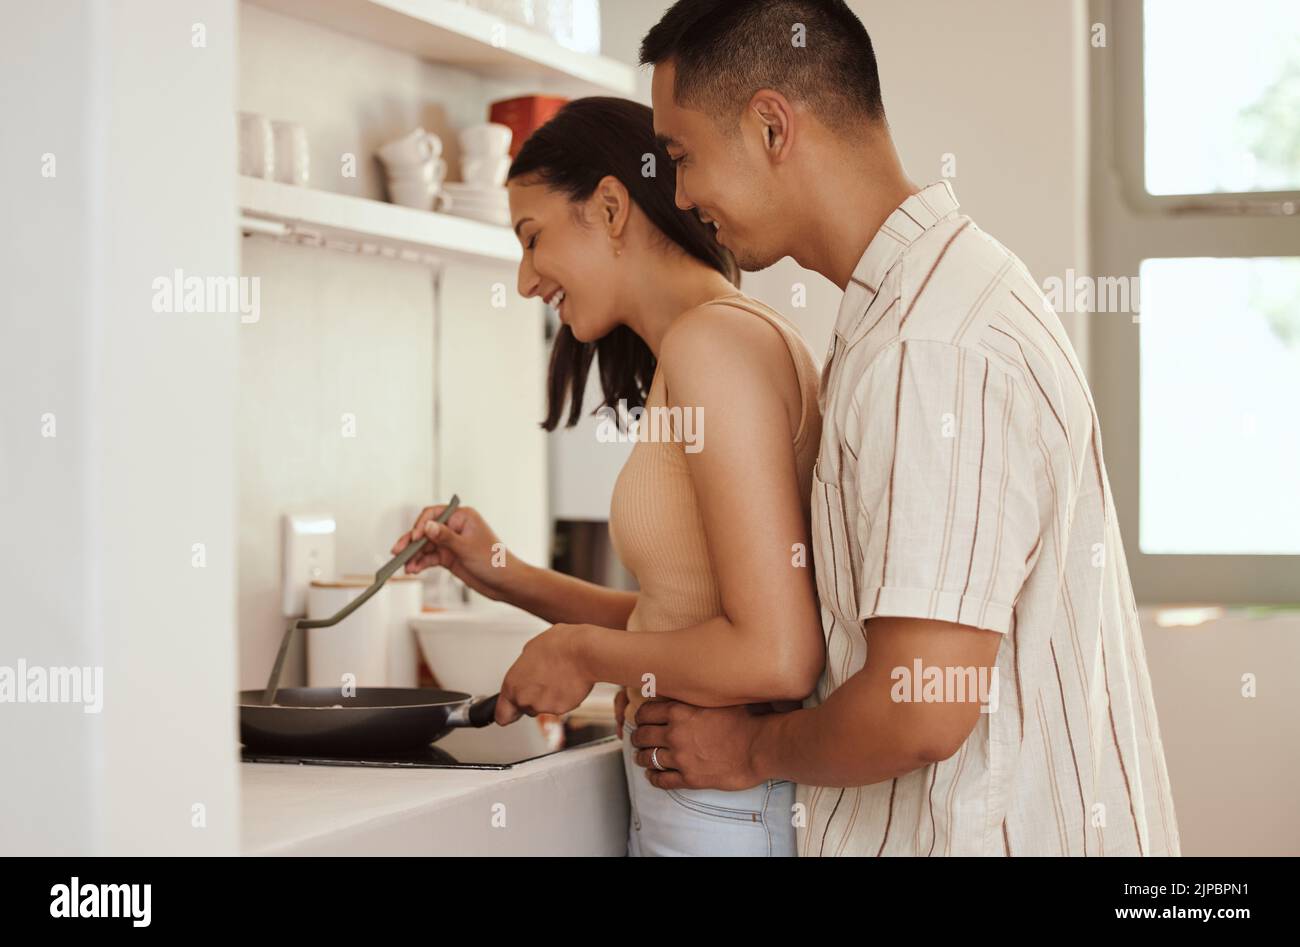 Romantisches, liebevolles und fürsorgliches Paar Kochen und Bonding während Umarmung am Morgen zu Hause. Lächelnder Ehemann und Ehefrau halten sich gegenseitig und umarmen sich Stockfoto